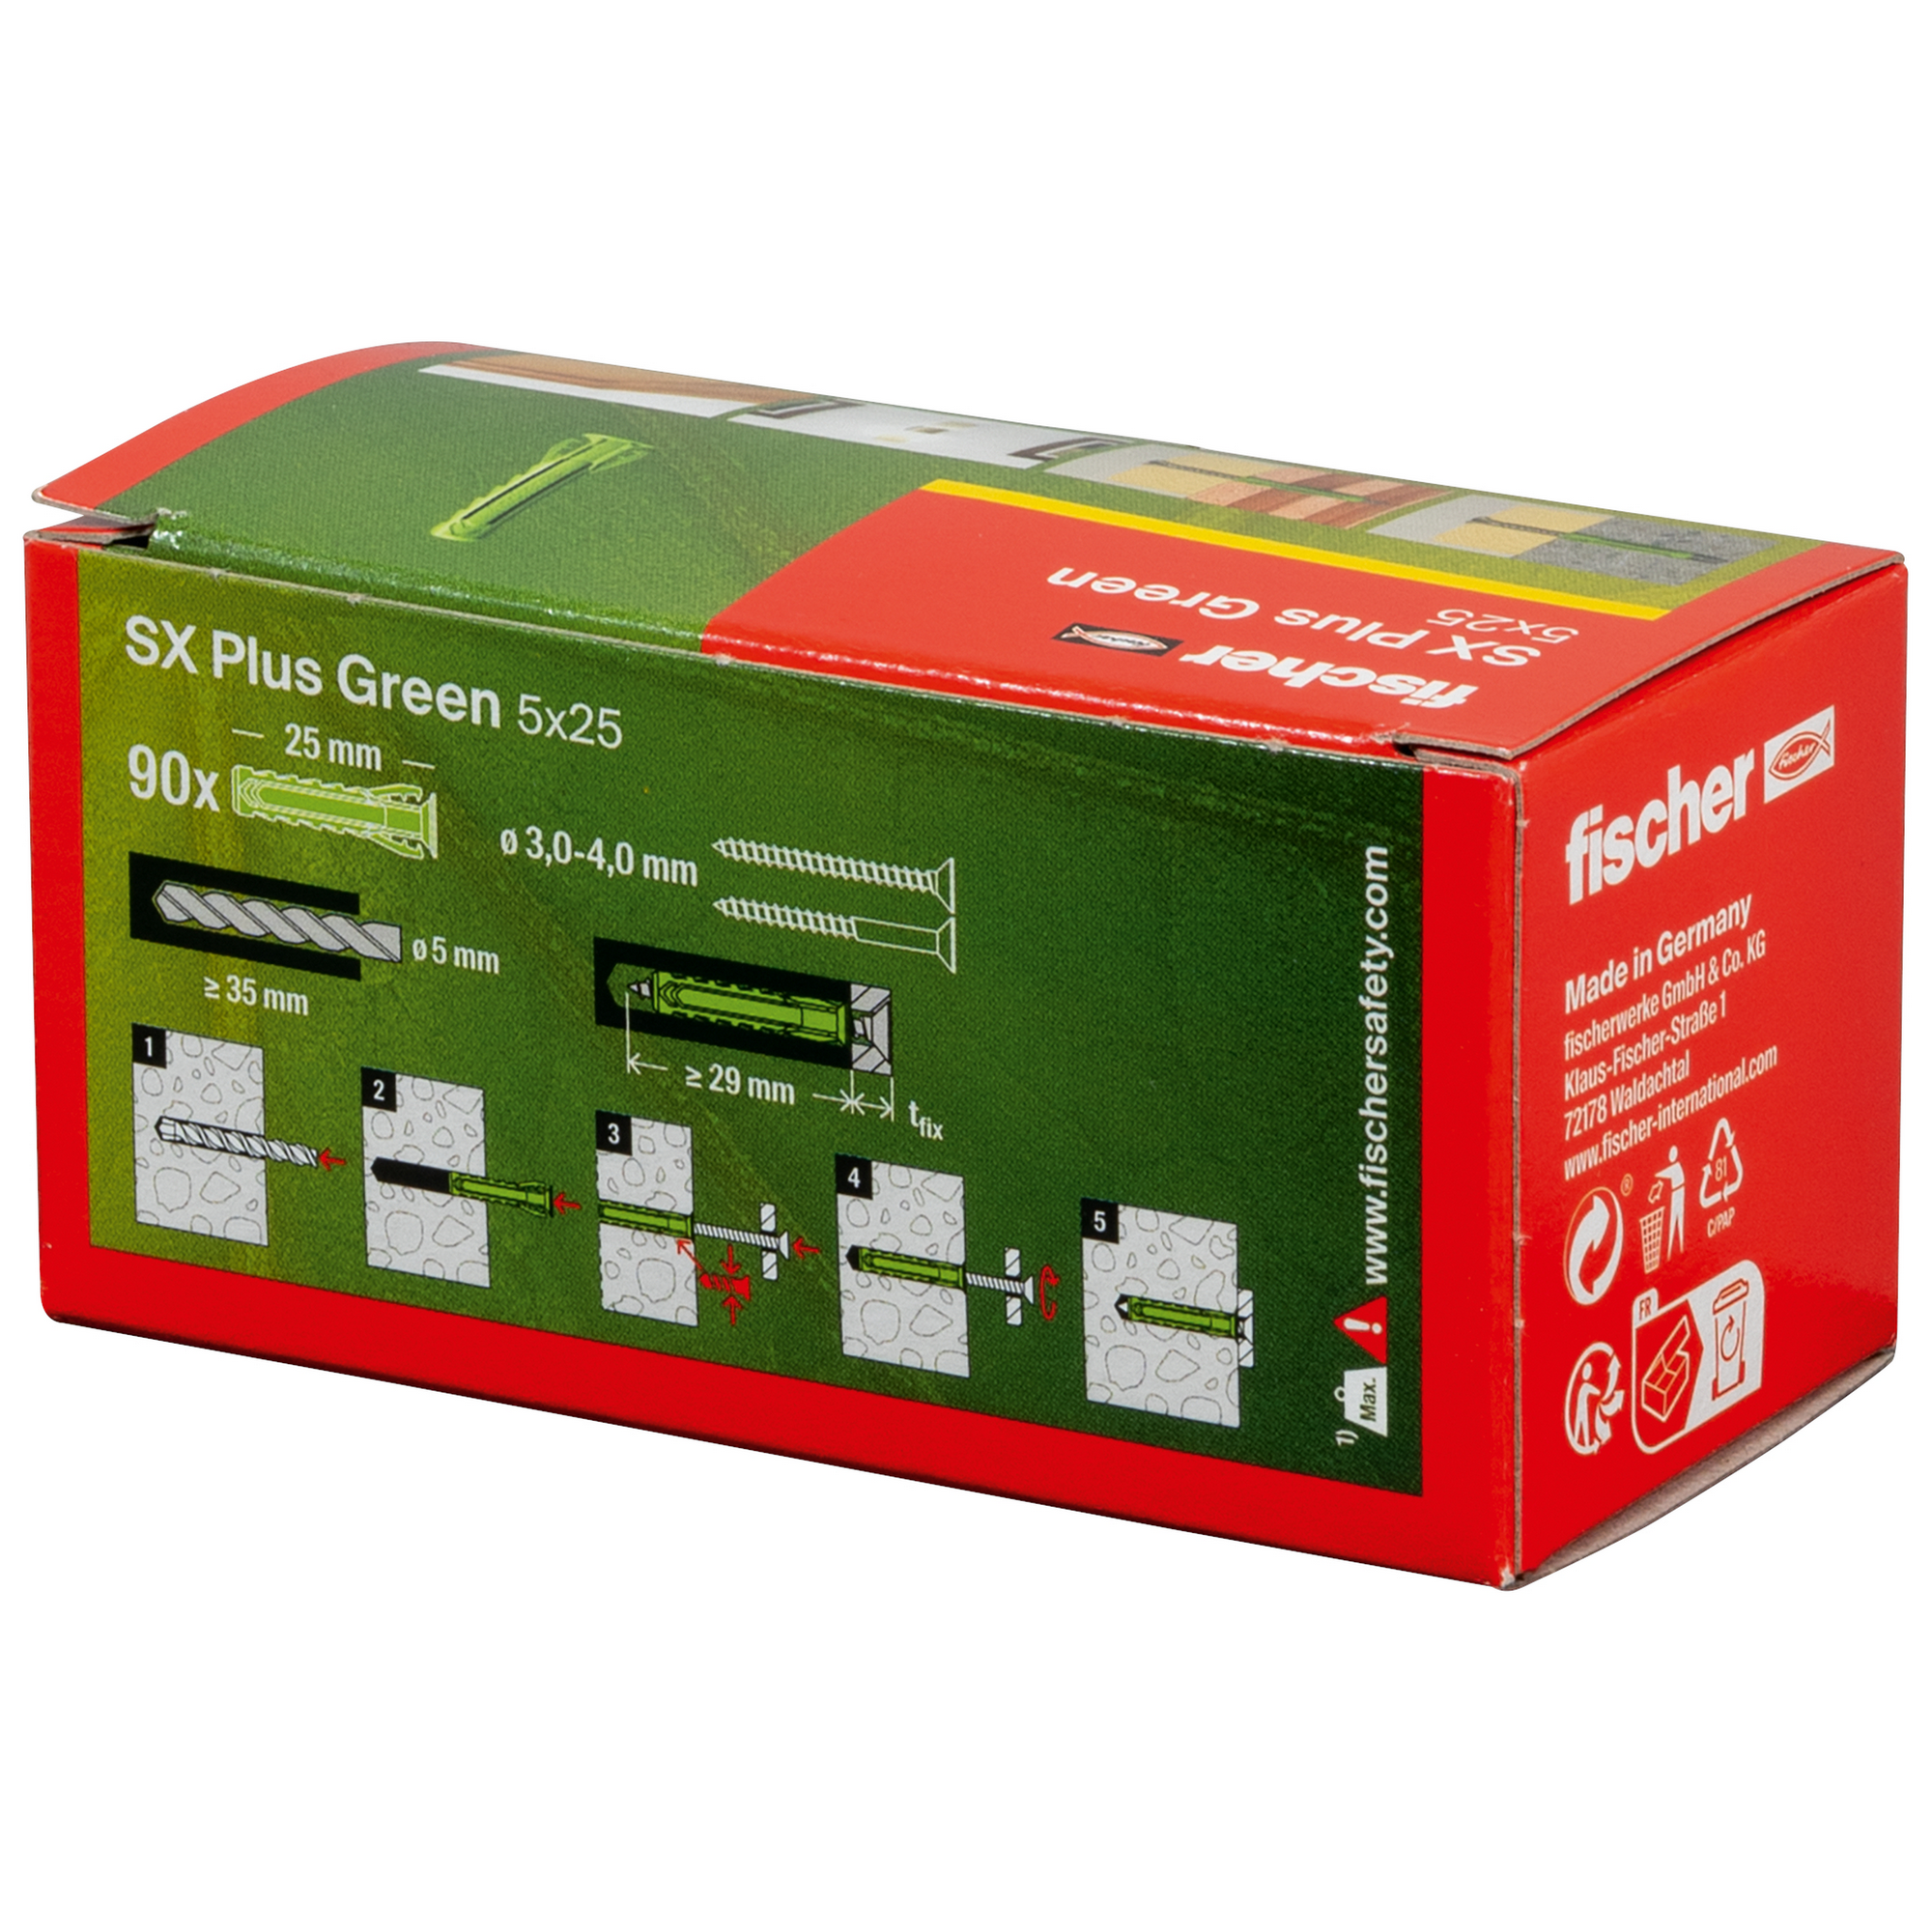 Spreizdübel-Set 'SX Plus Green' Ø 5 x 25 mm, 90-teilig + product picture